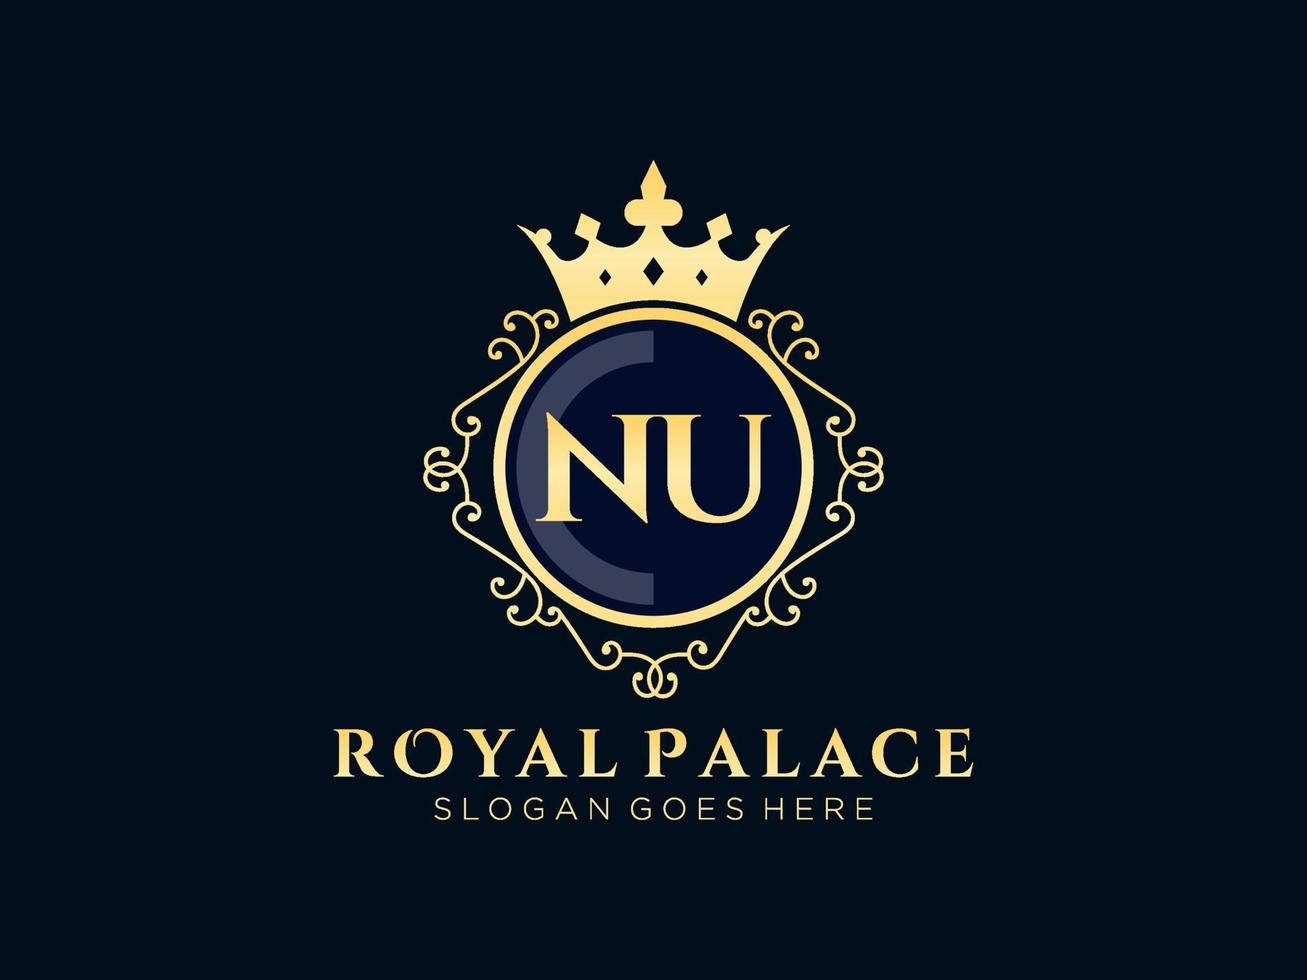 lettre nu logo victorien de luxe royal antique avec cadre ornemental. vecteur